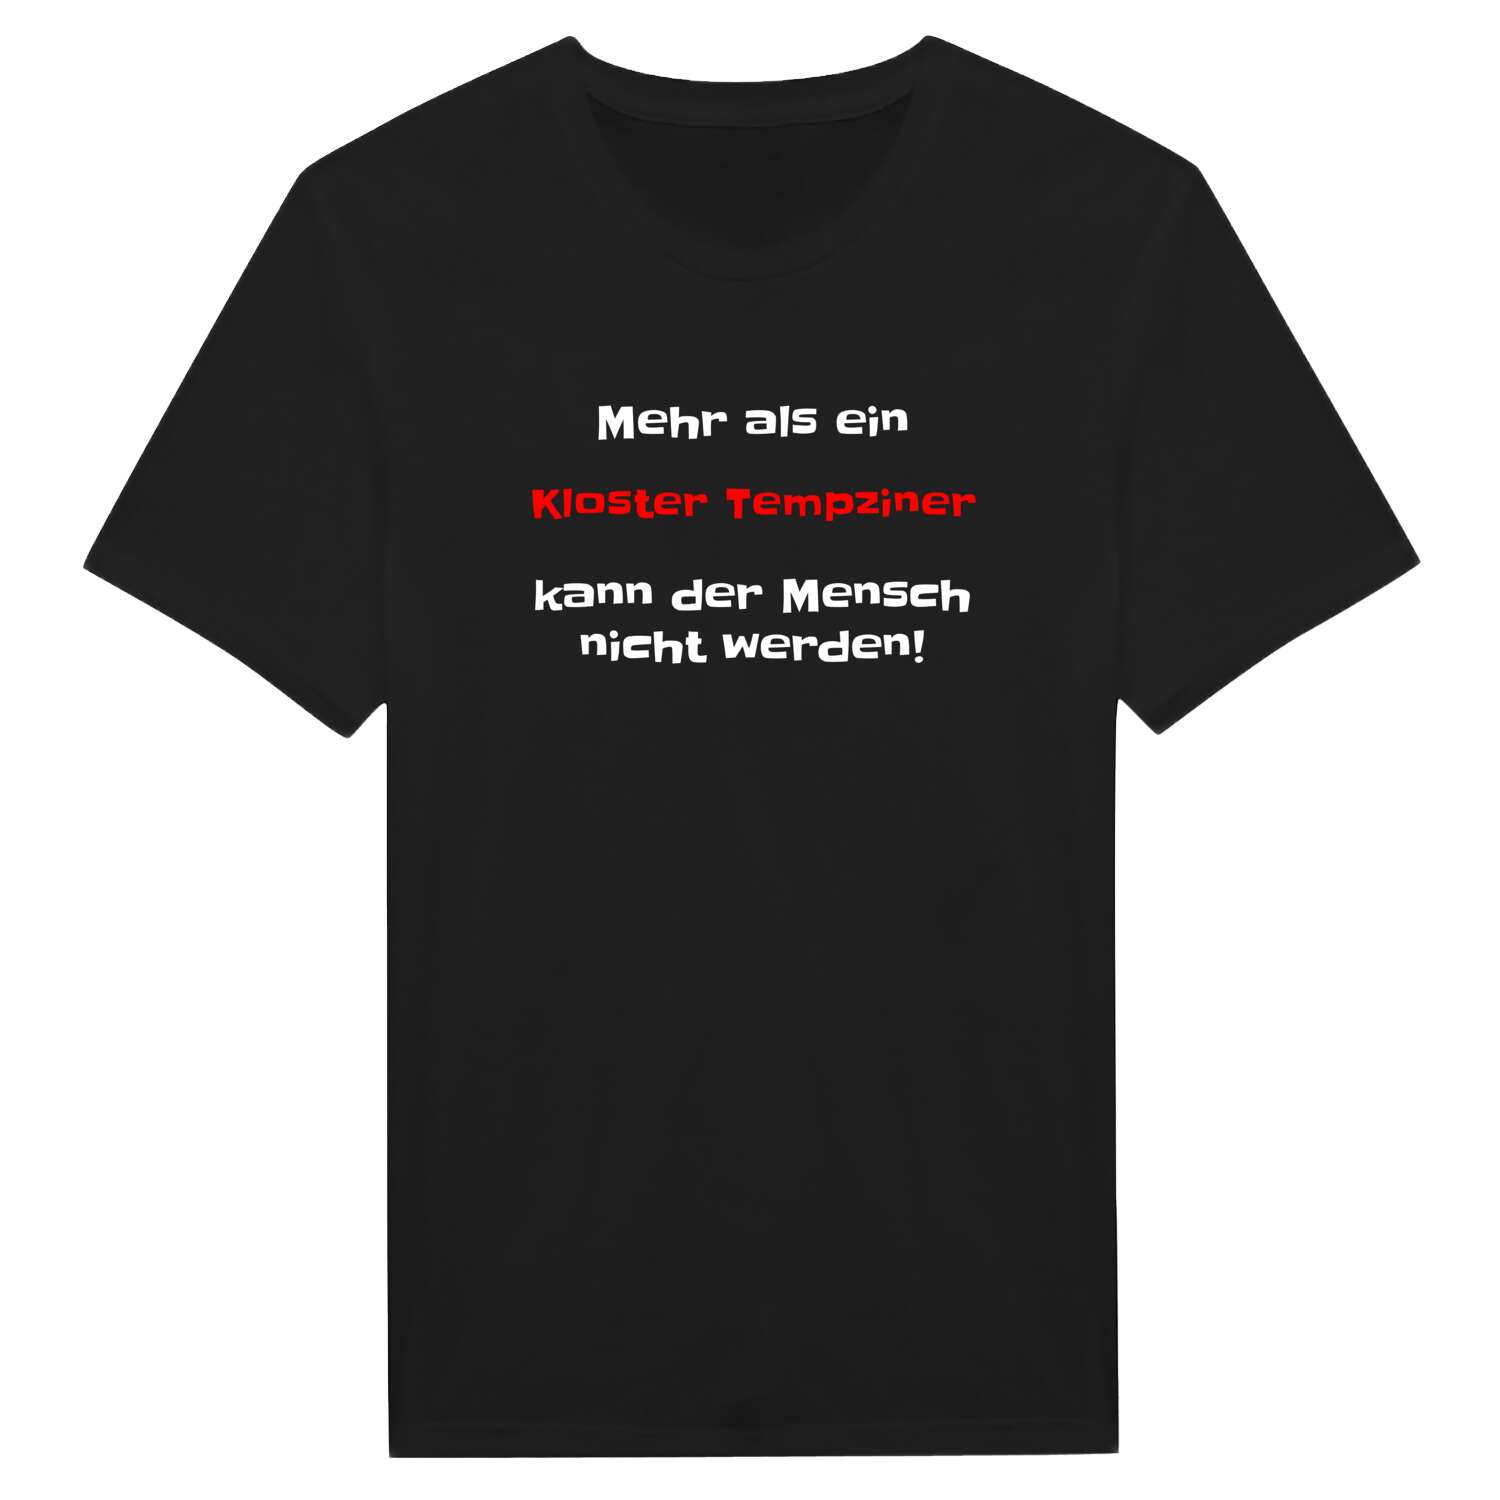 Kloster Tempzin T-Shirt »Mehr als ein«